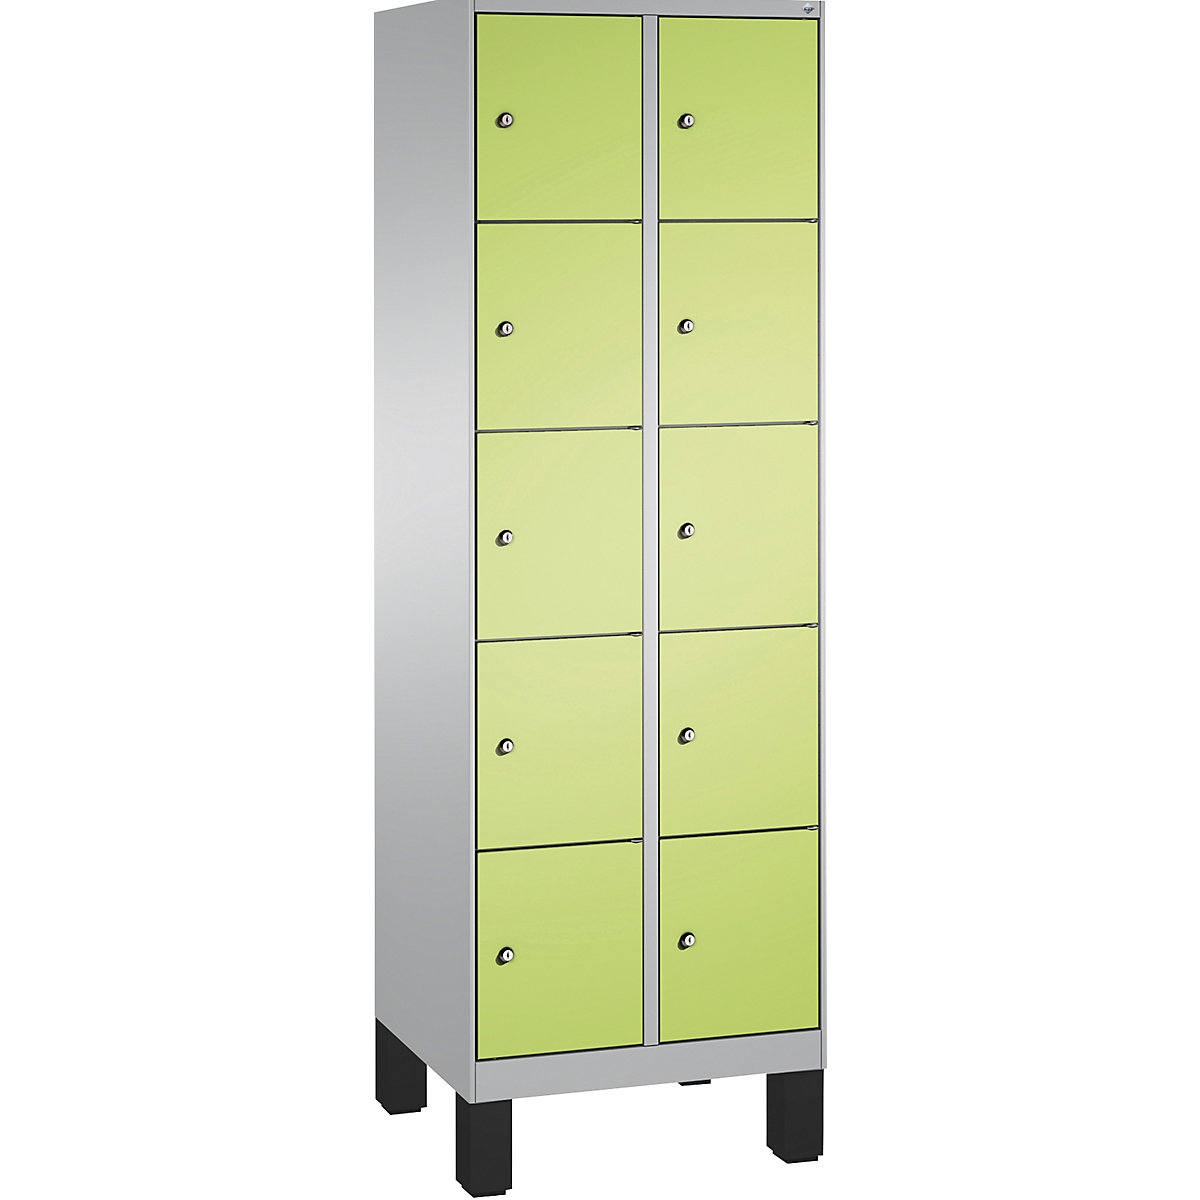 Armoire à casiers sur pieds EVOLO – C+P, 2 compartiments, 5 casiers chacun, largeur compartiments 300 mm, aluminium / vert-9